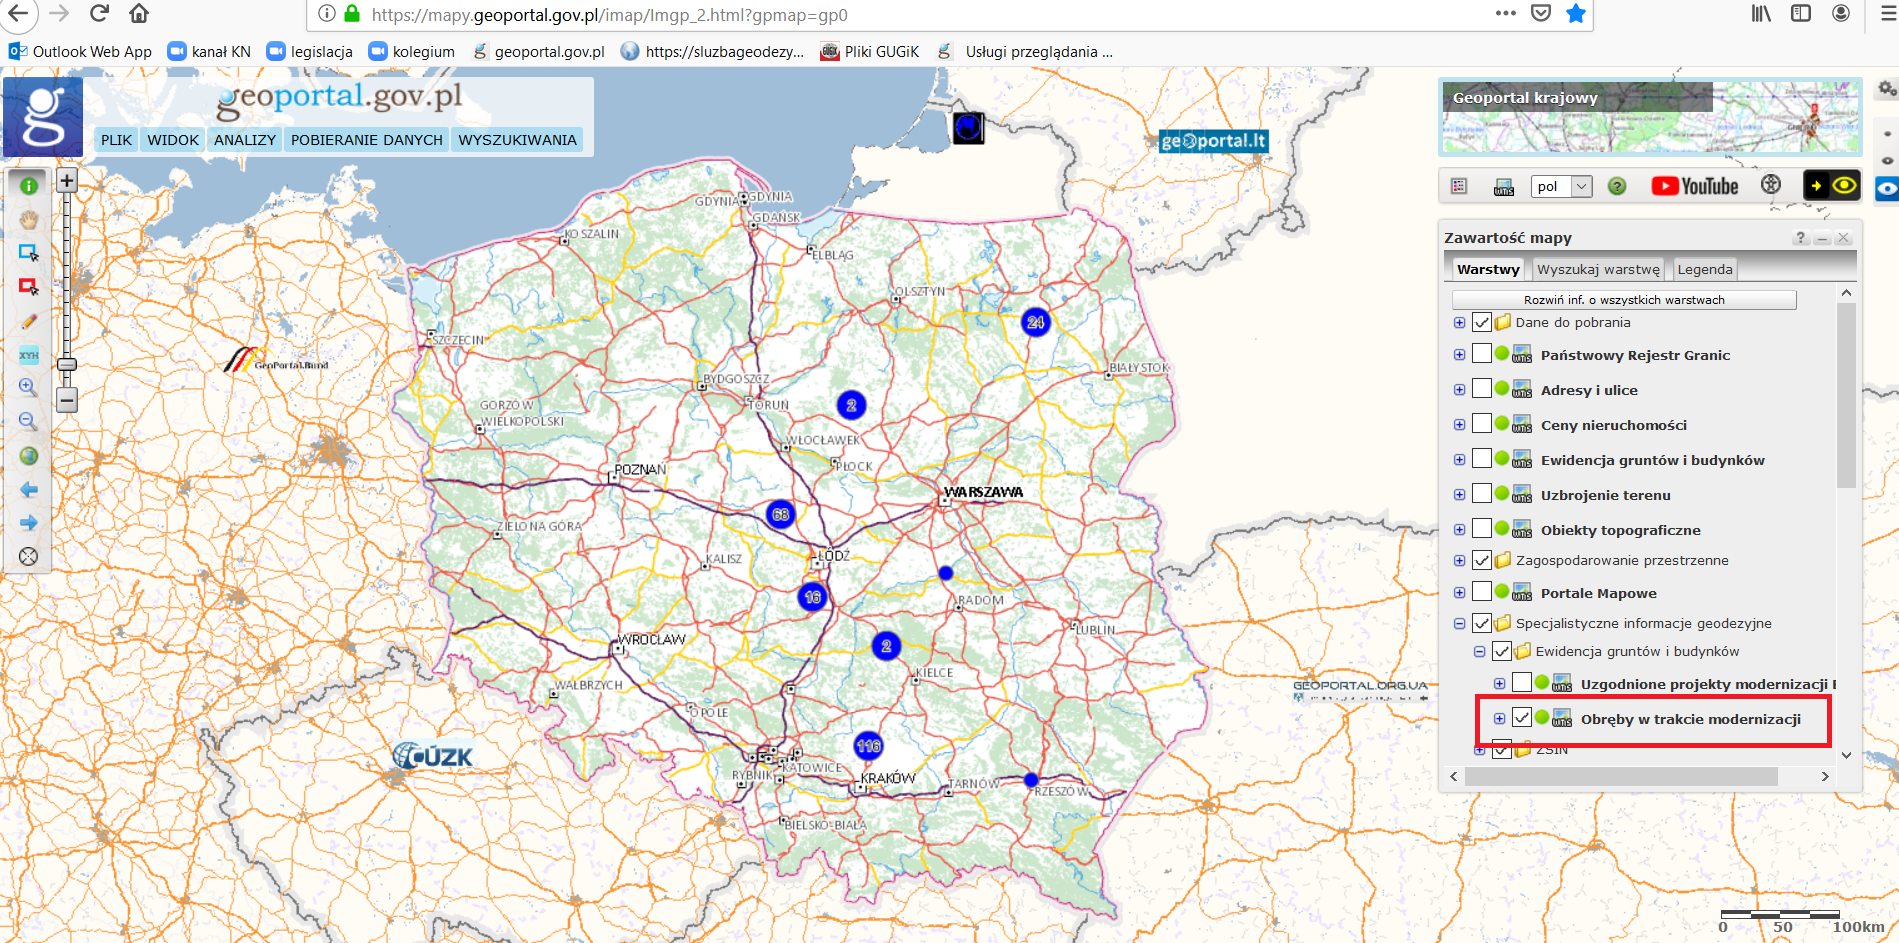 Ilustracja przedstawia zrzut ekranu z serwisu www.geoportal.gov.pl prezentujący warstwę „Obręby w trakcie modernizacji”.